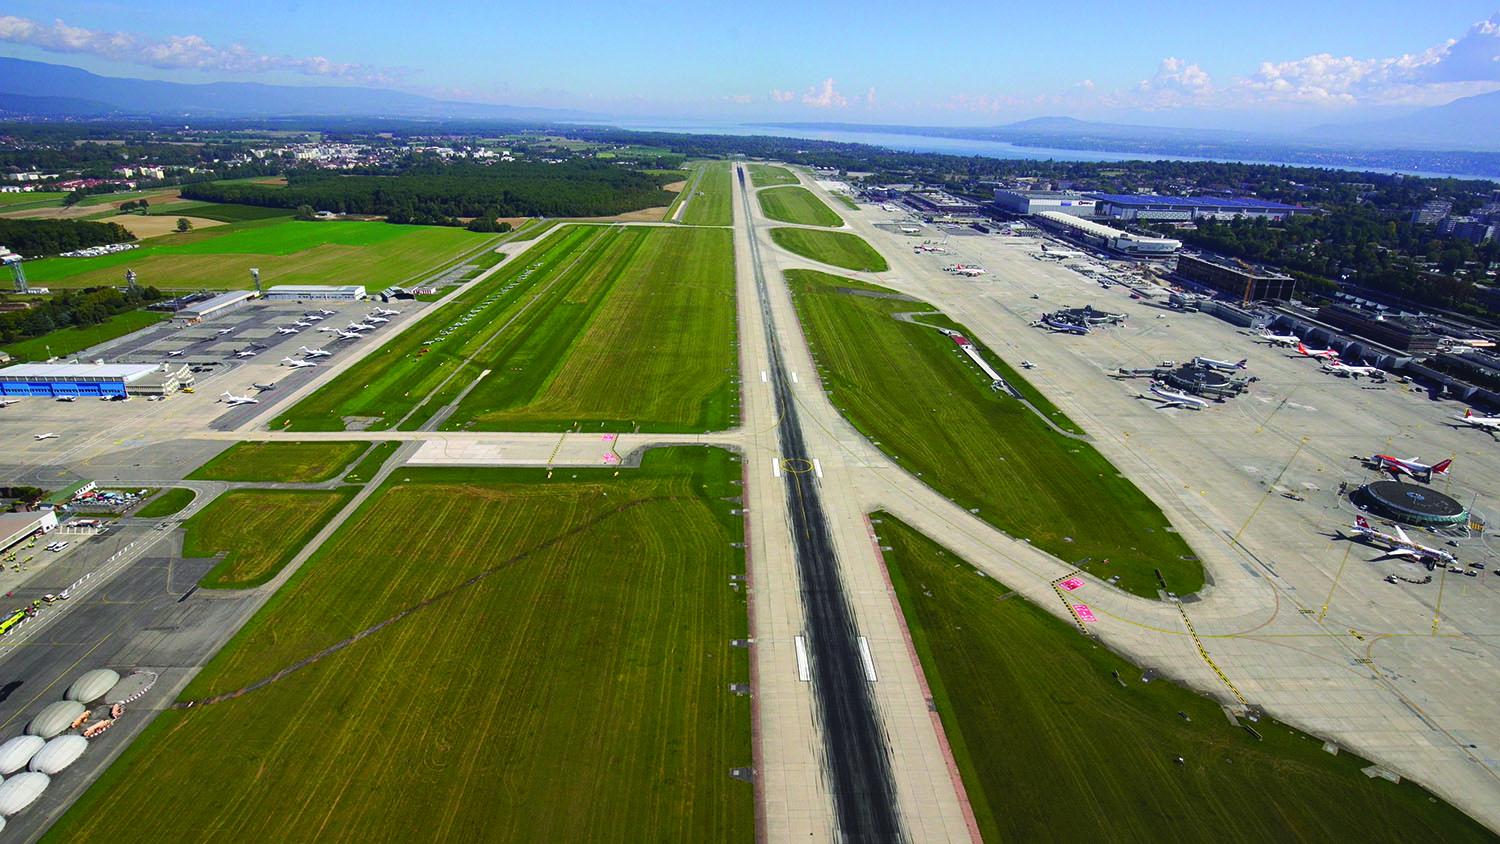 The runway at Geneva Airport in 2019.